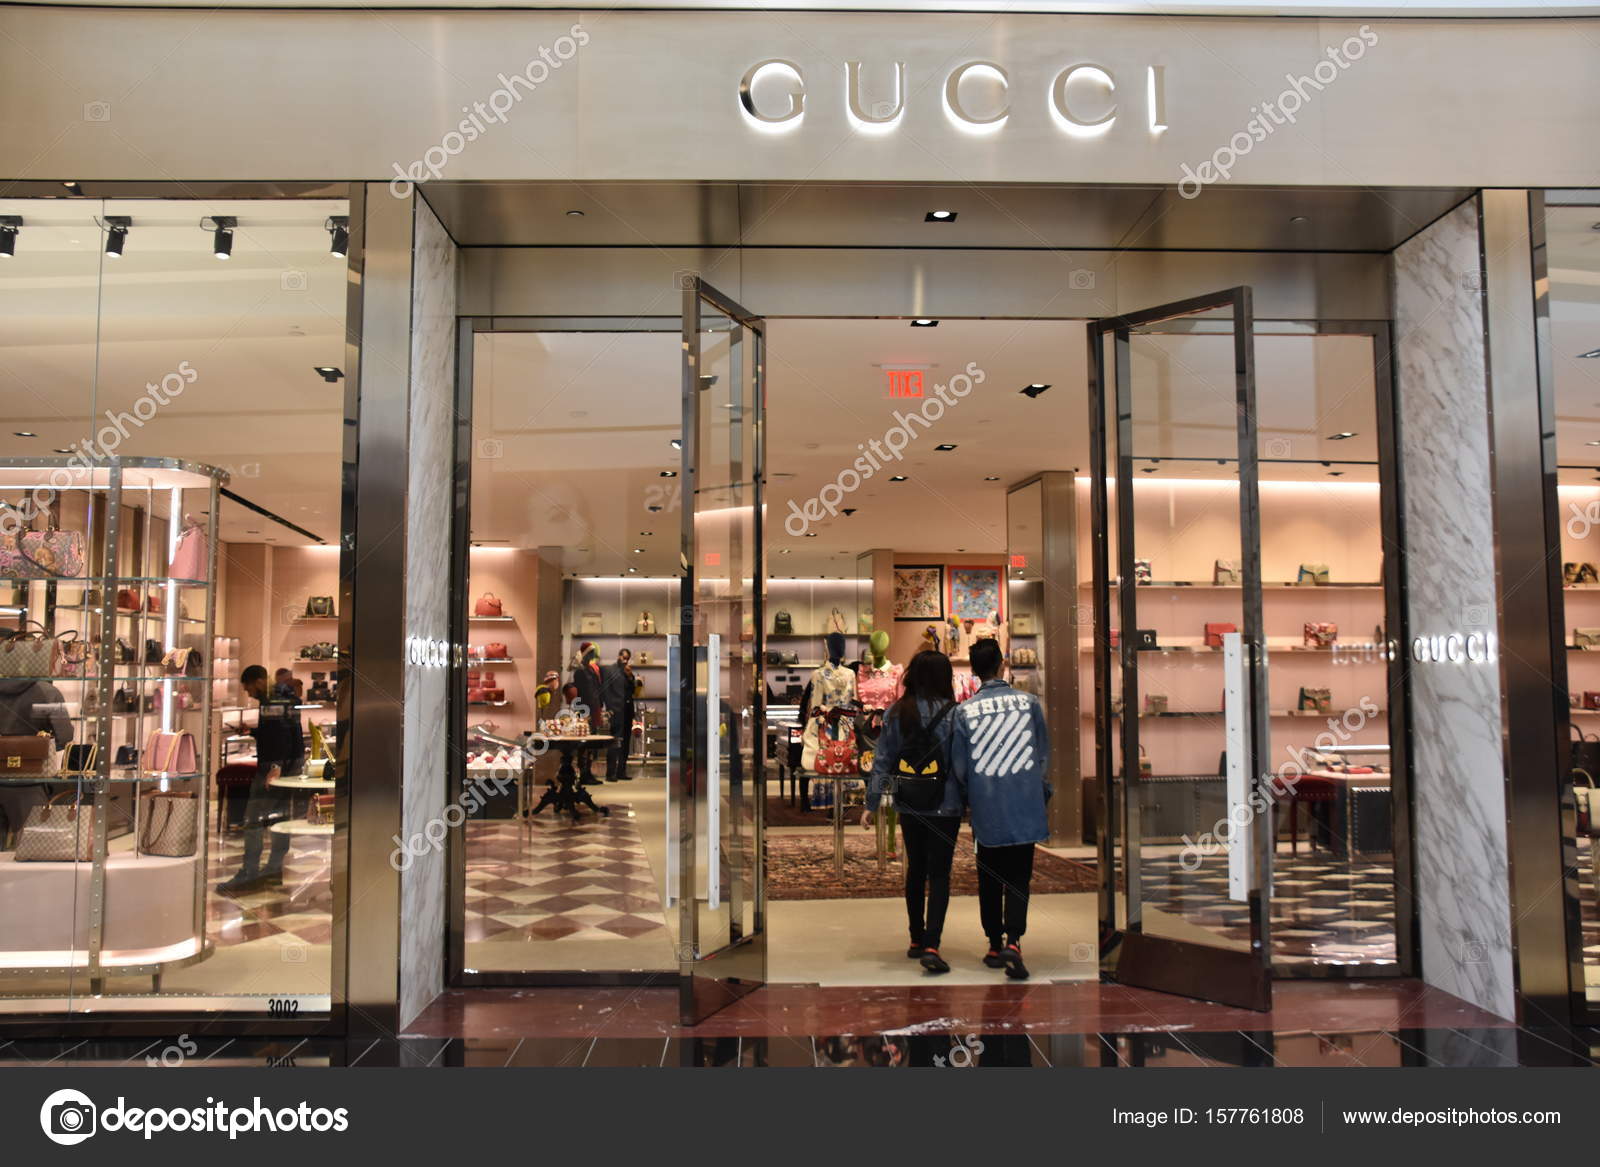 gucci store mall